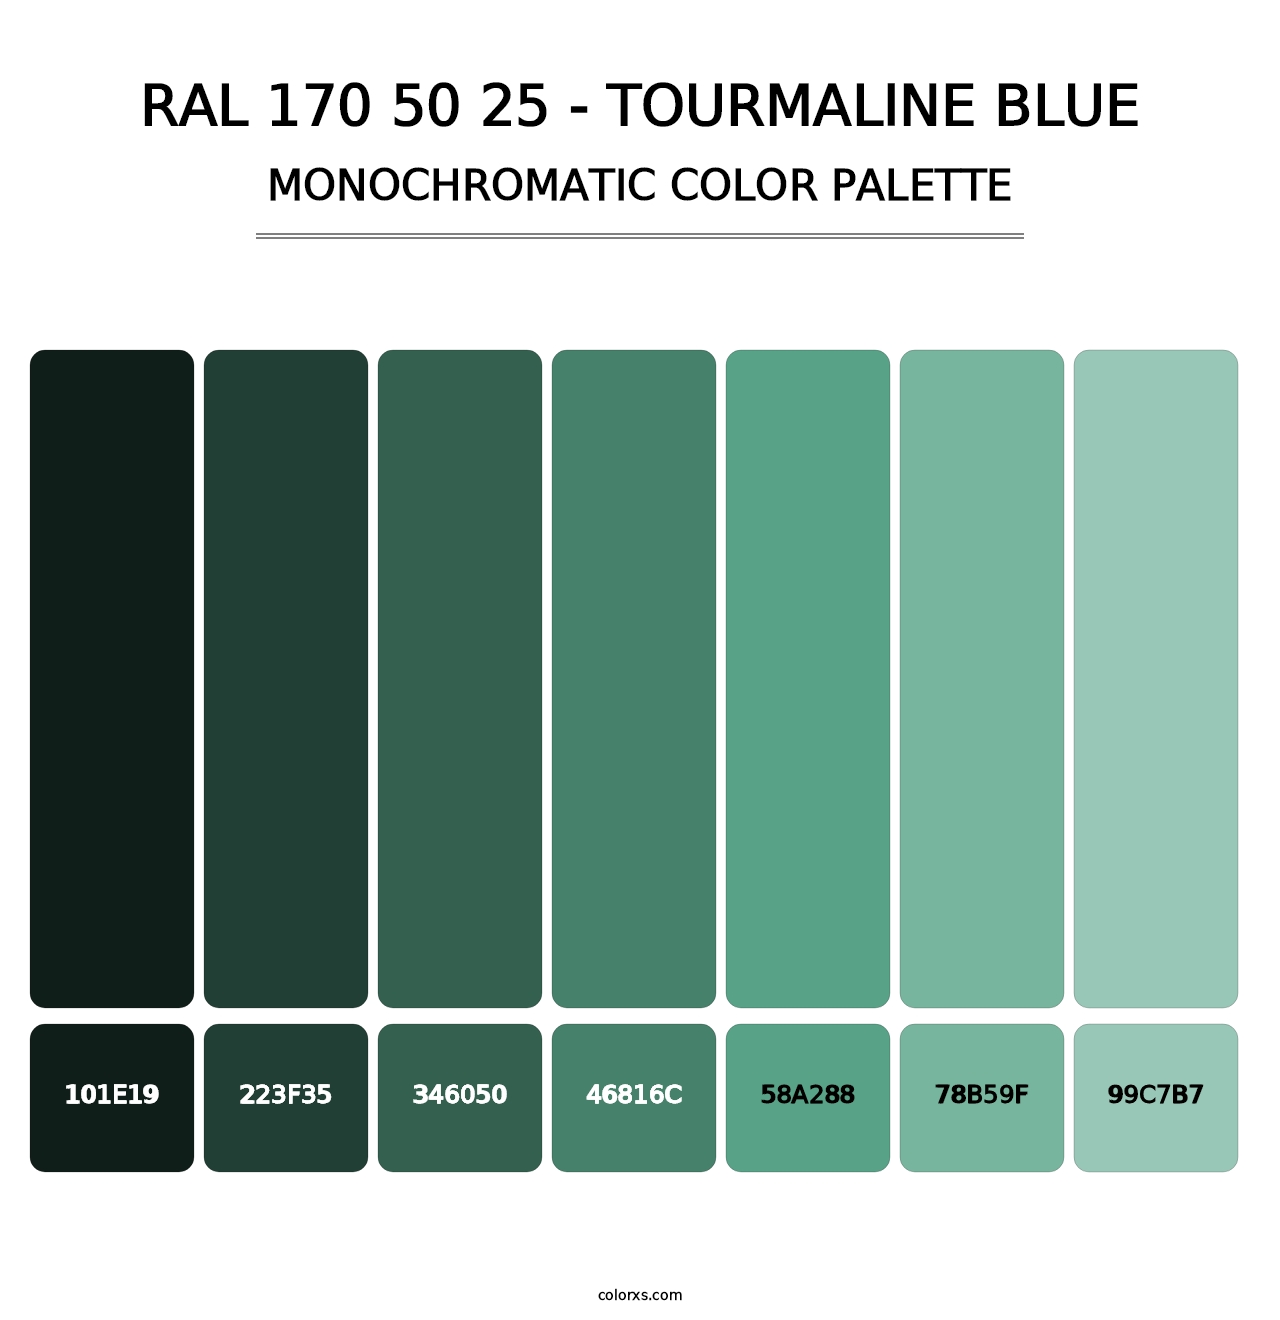 RAL 170 50 25 - Tourmaline Blue - Monochromatic Color Palette